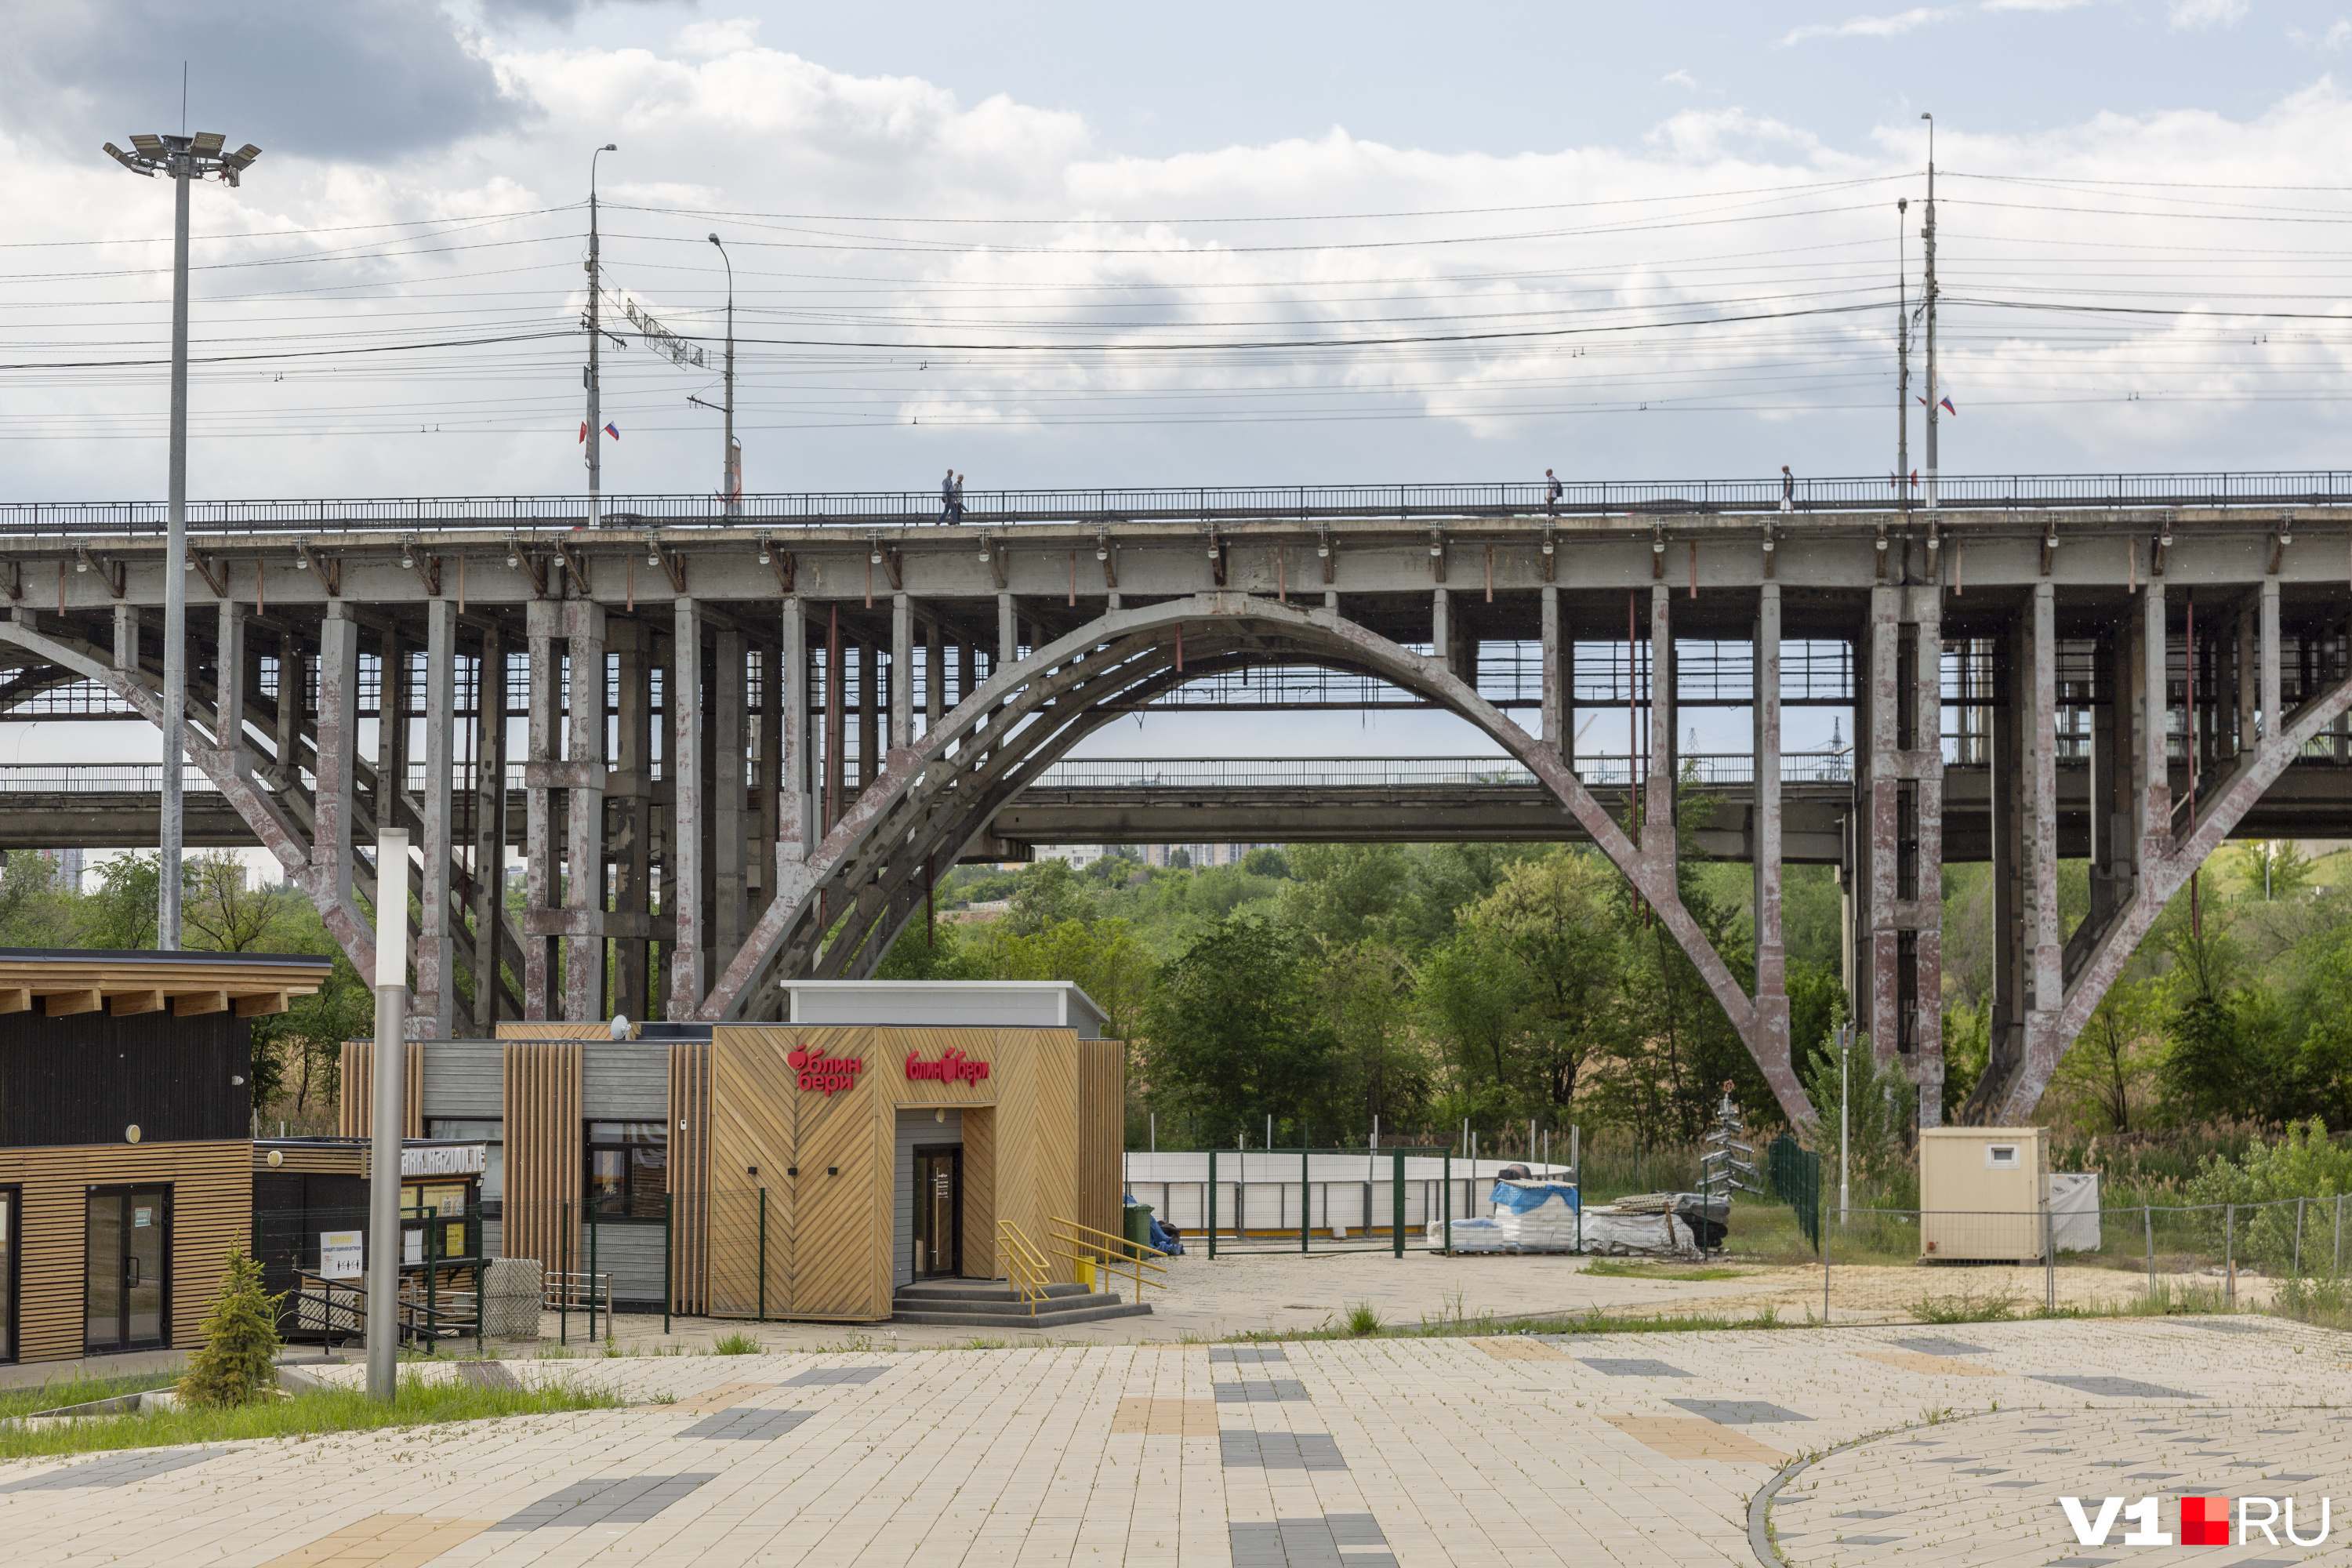 Астраханский мост уже пятый по счету. И, возможно, это не окончательное число